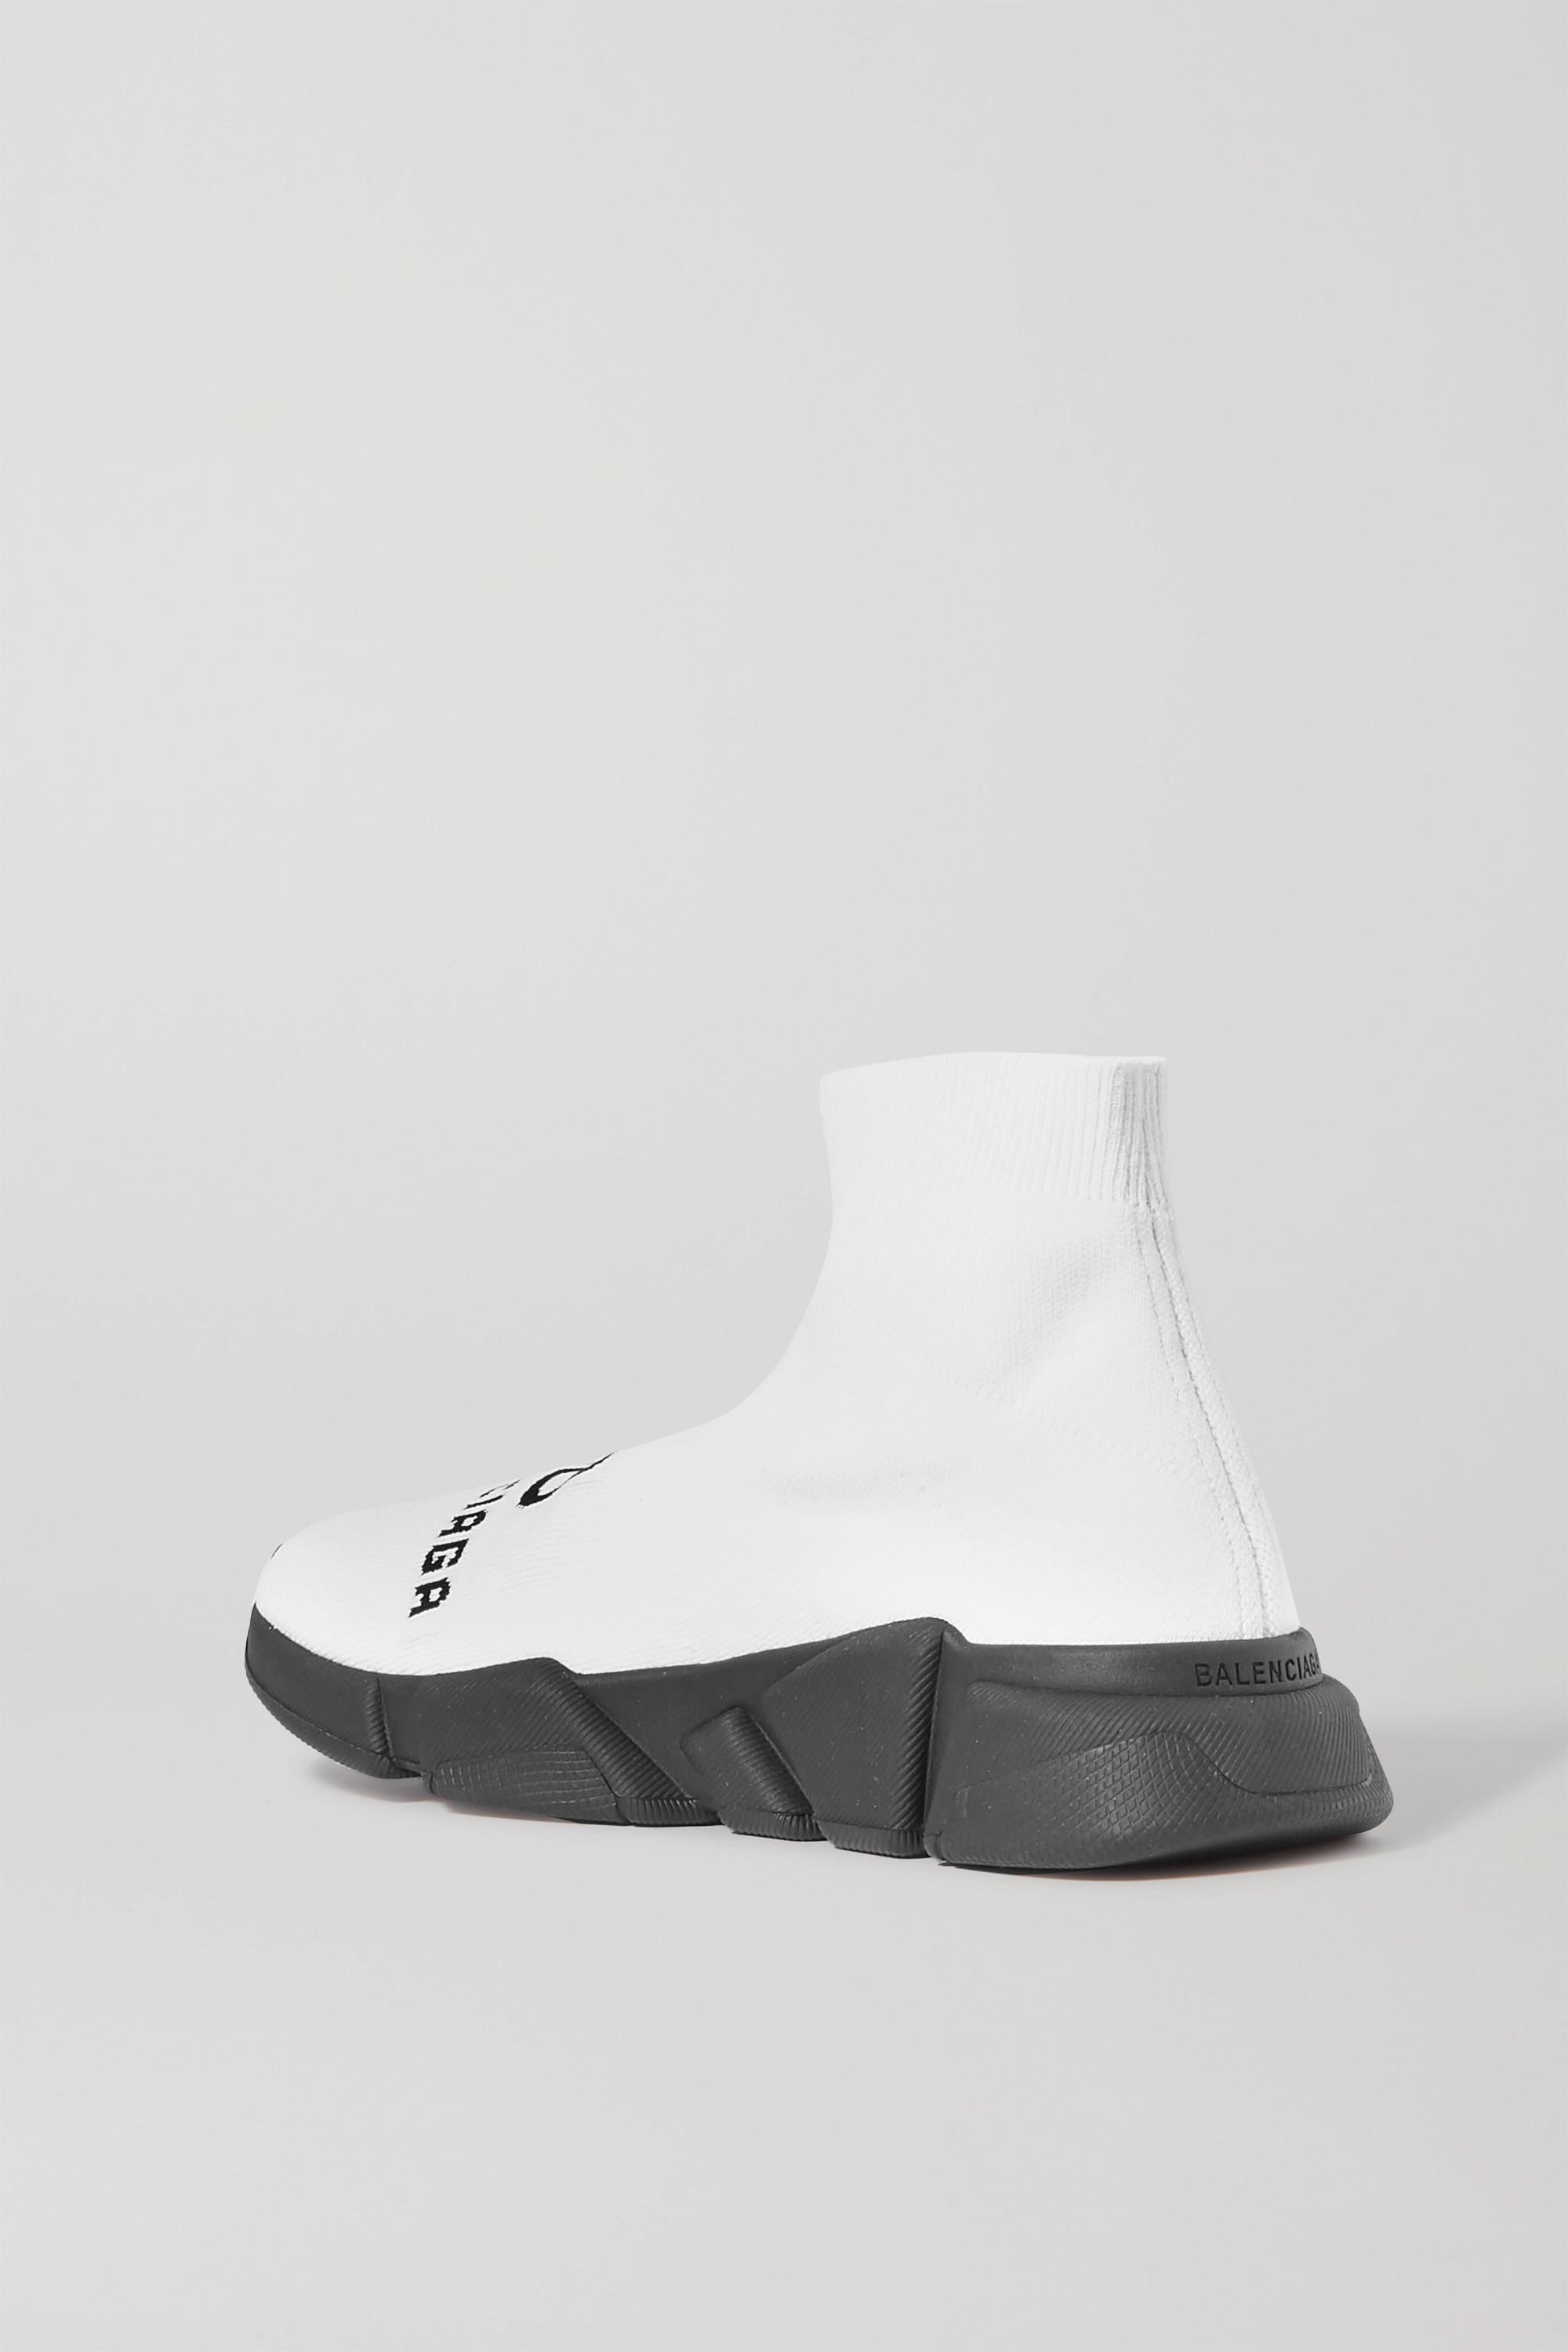 Balenciaga Synthetik Recycled Speed Sneaker in Weiß - Sparen Sie 24% - Lyst